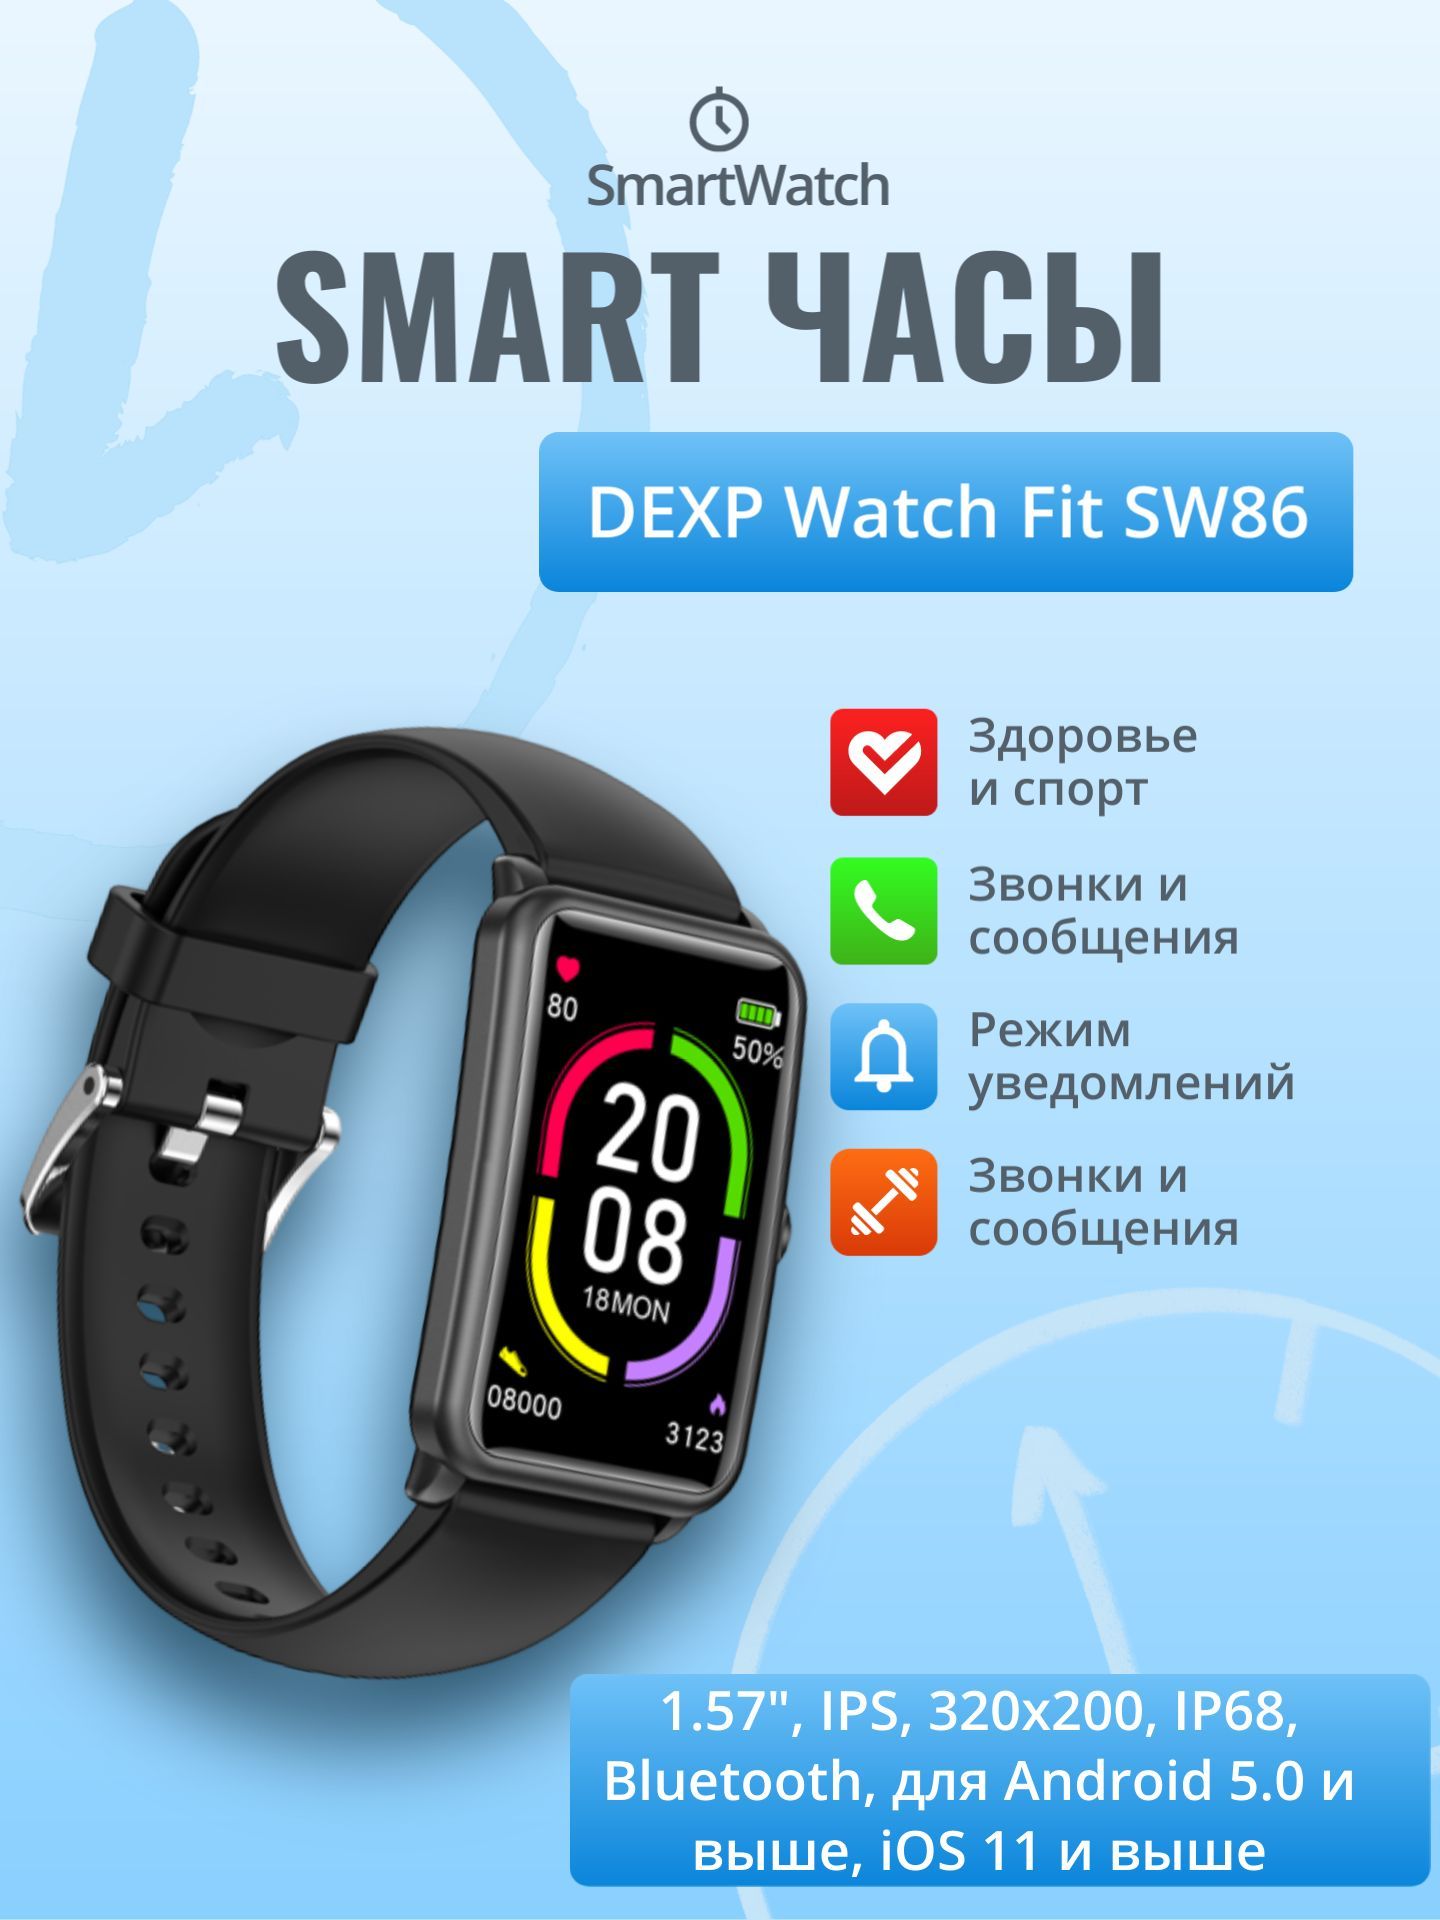 Настроить часы dexp. Смарт часы дексп. Смарт-часы DEXP sw86. DEXP watch Fit sw86. Набор дисплеев DEXP для часов.